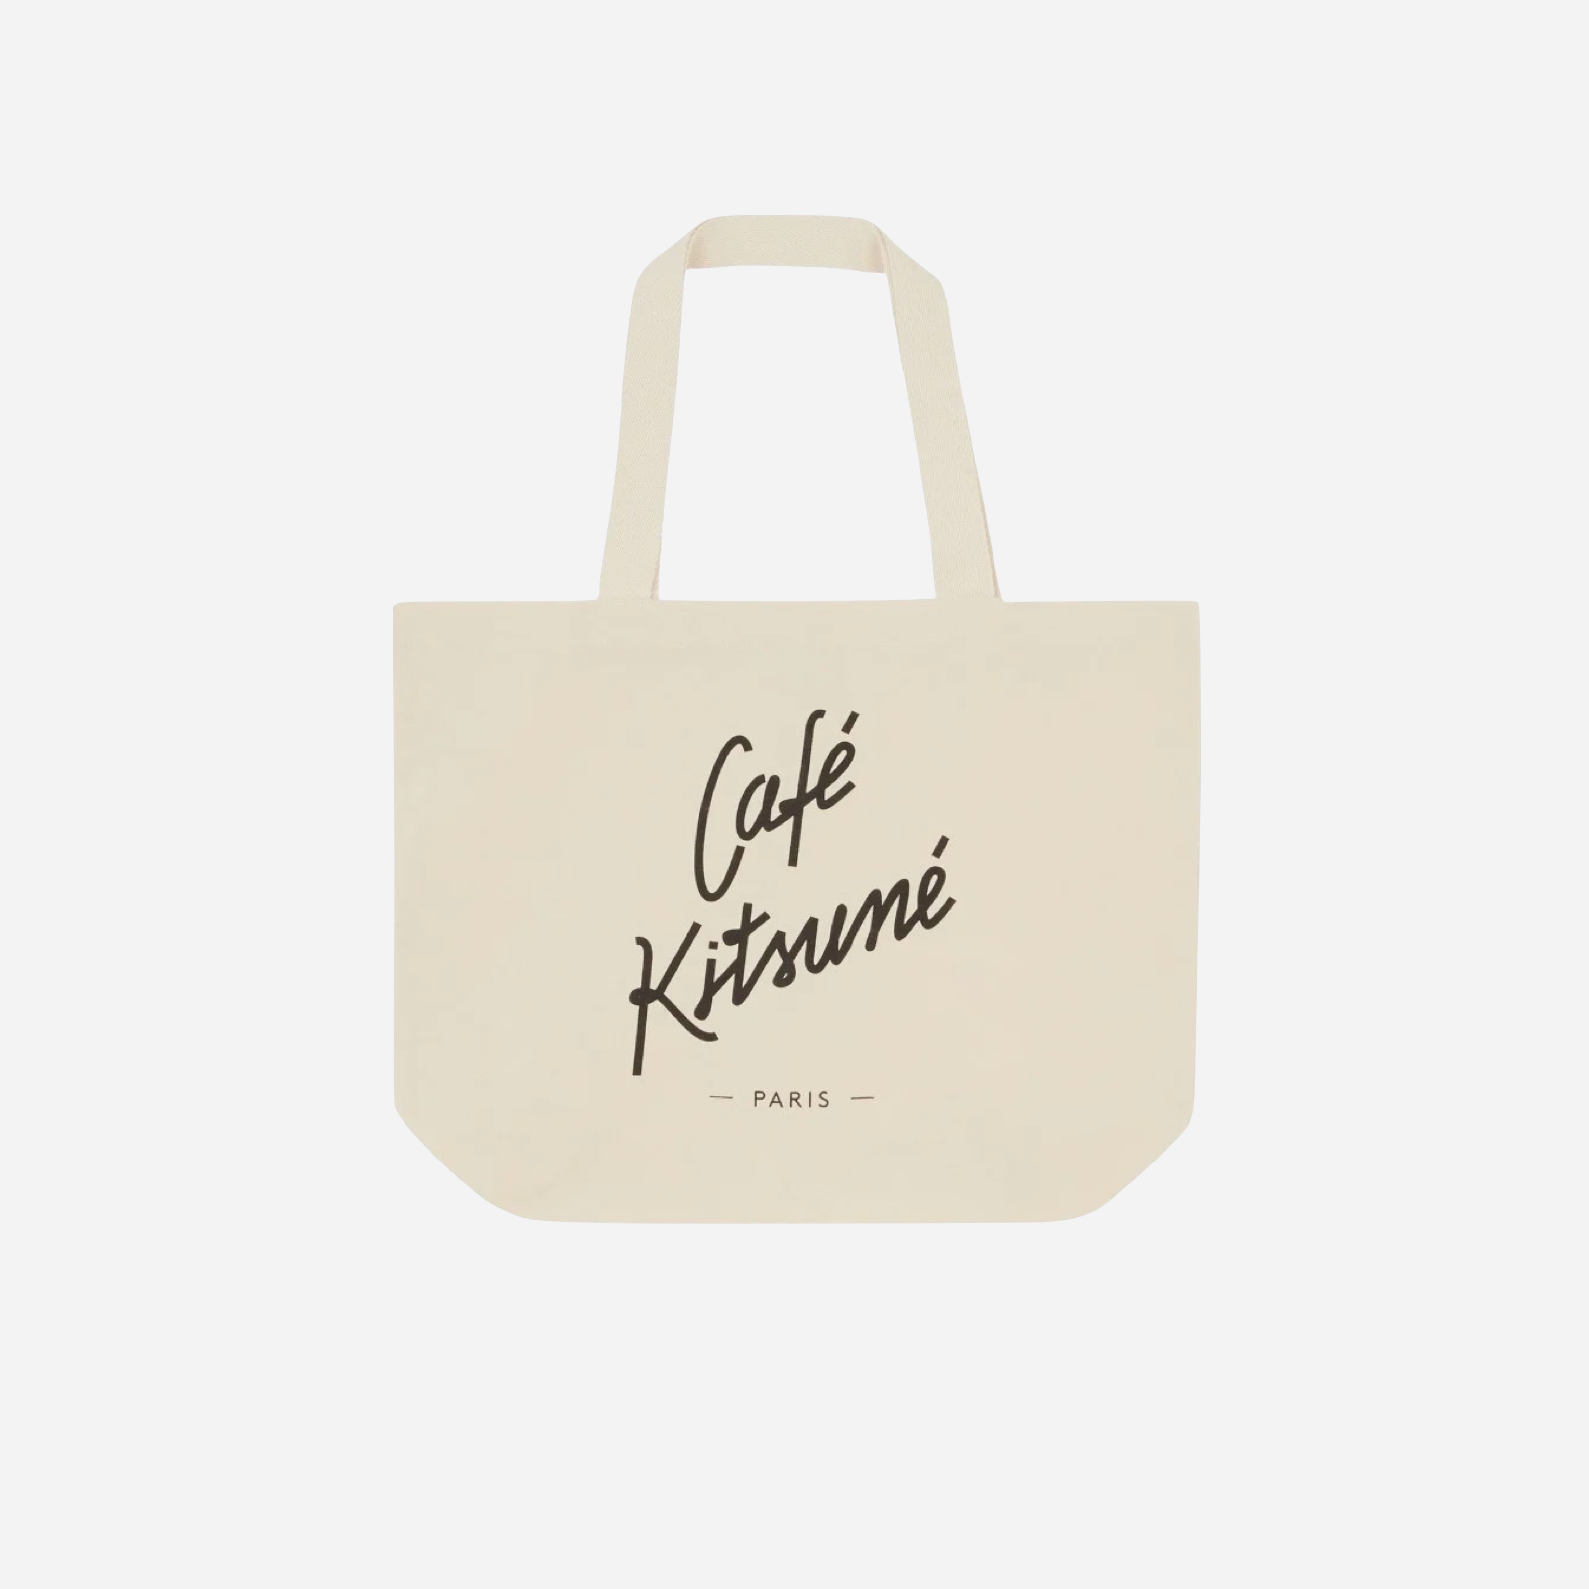 Café Kitsuné Tote Bag